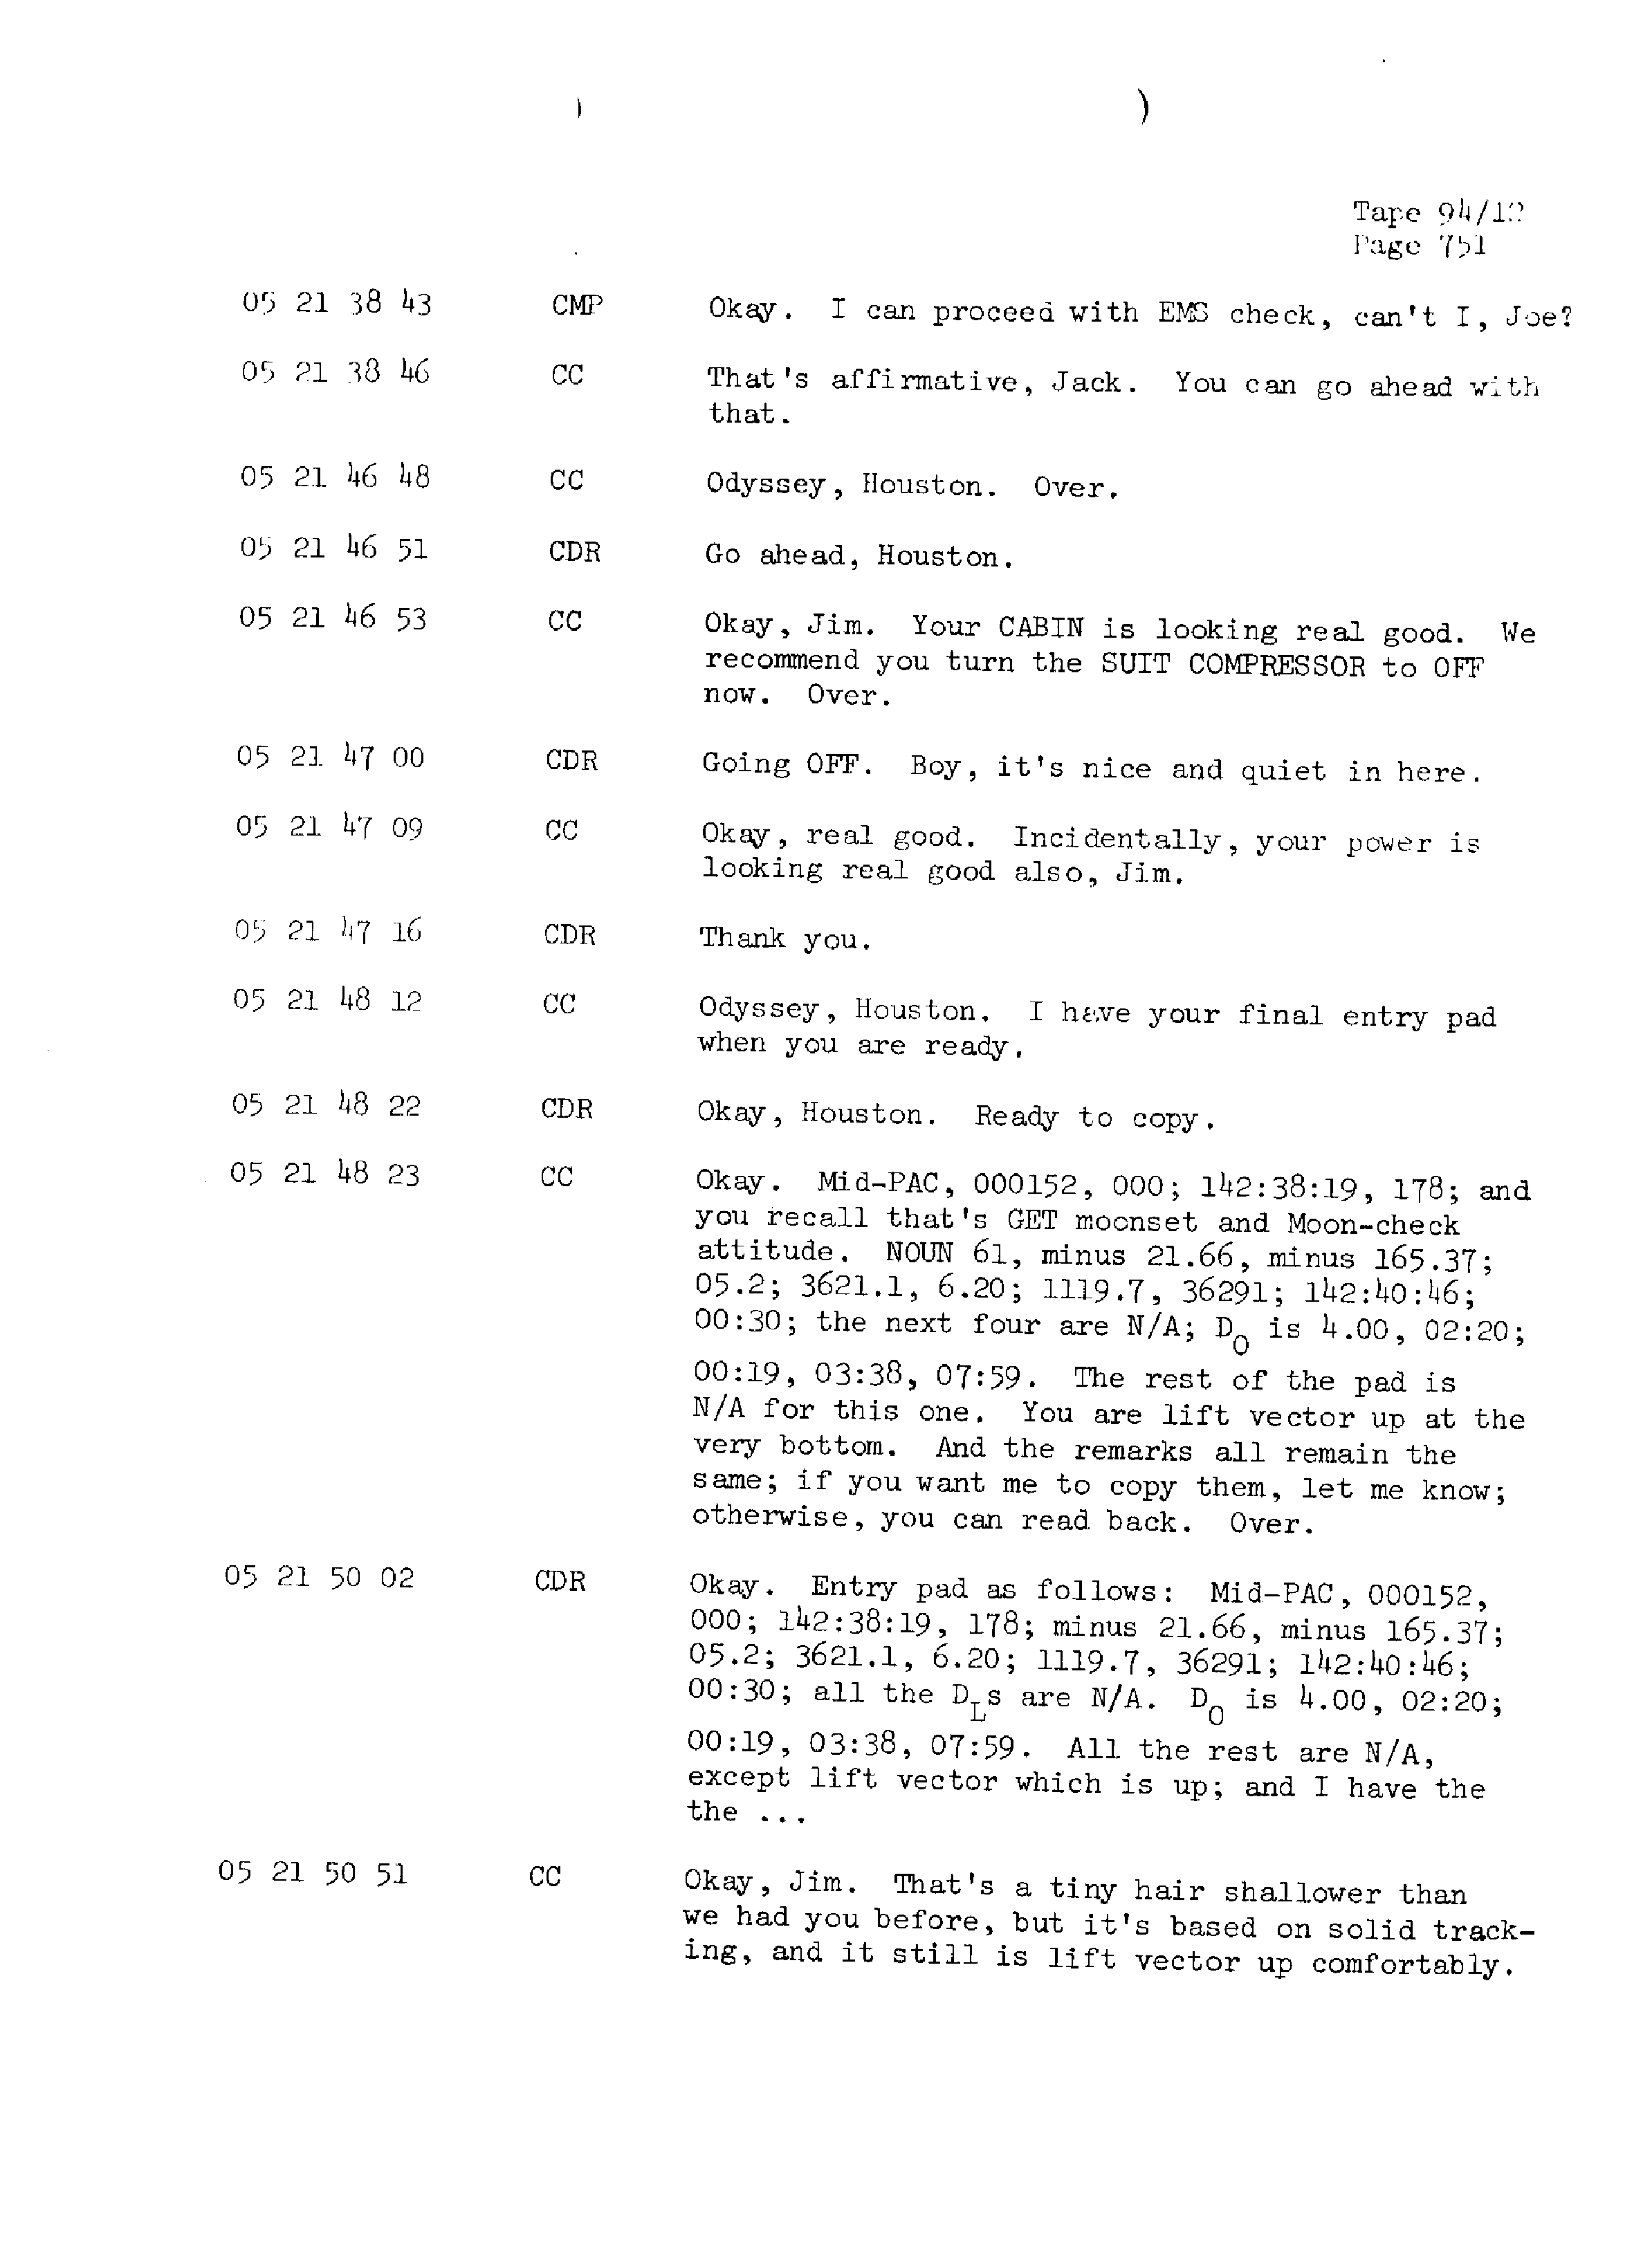 Page 758 of Apollo 13’s original transcript